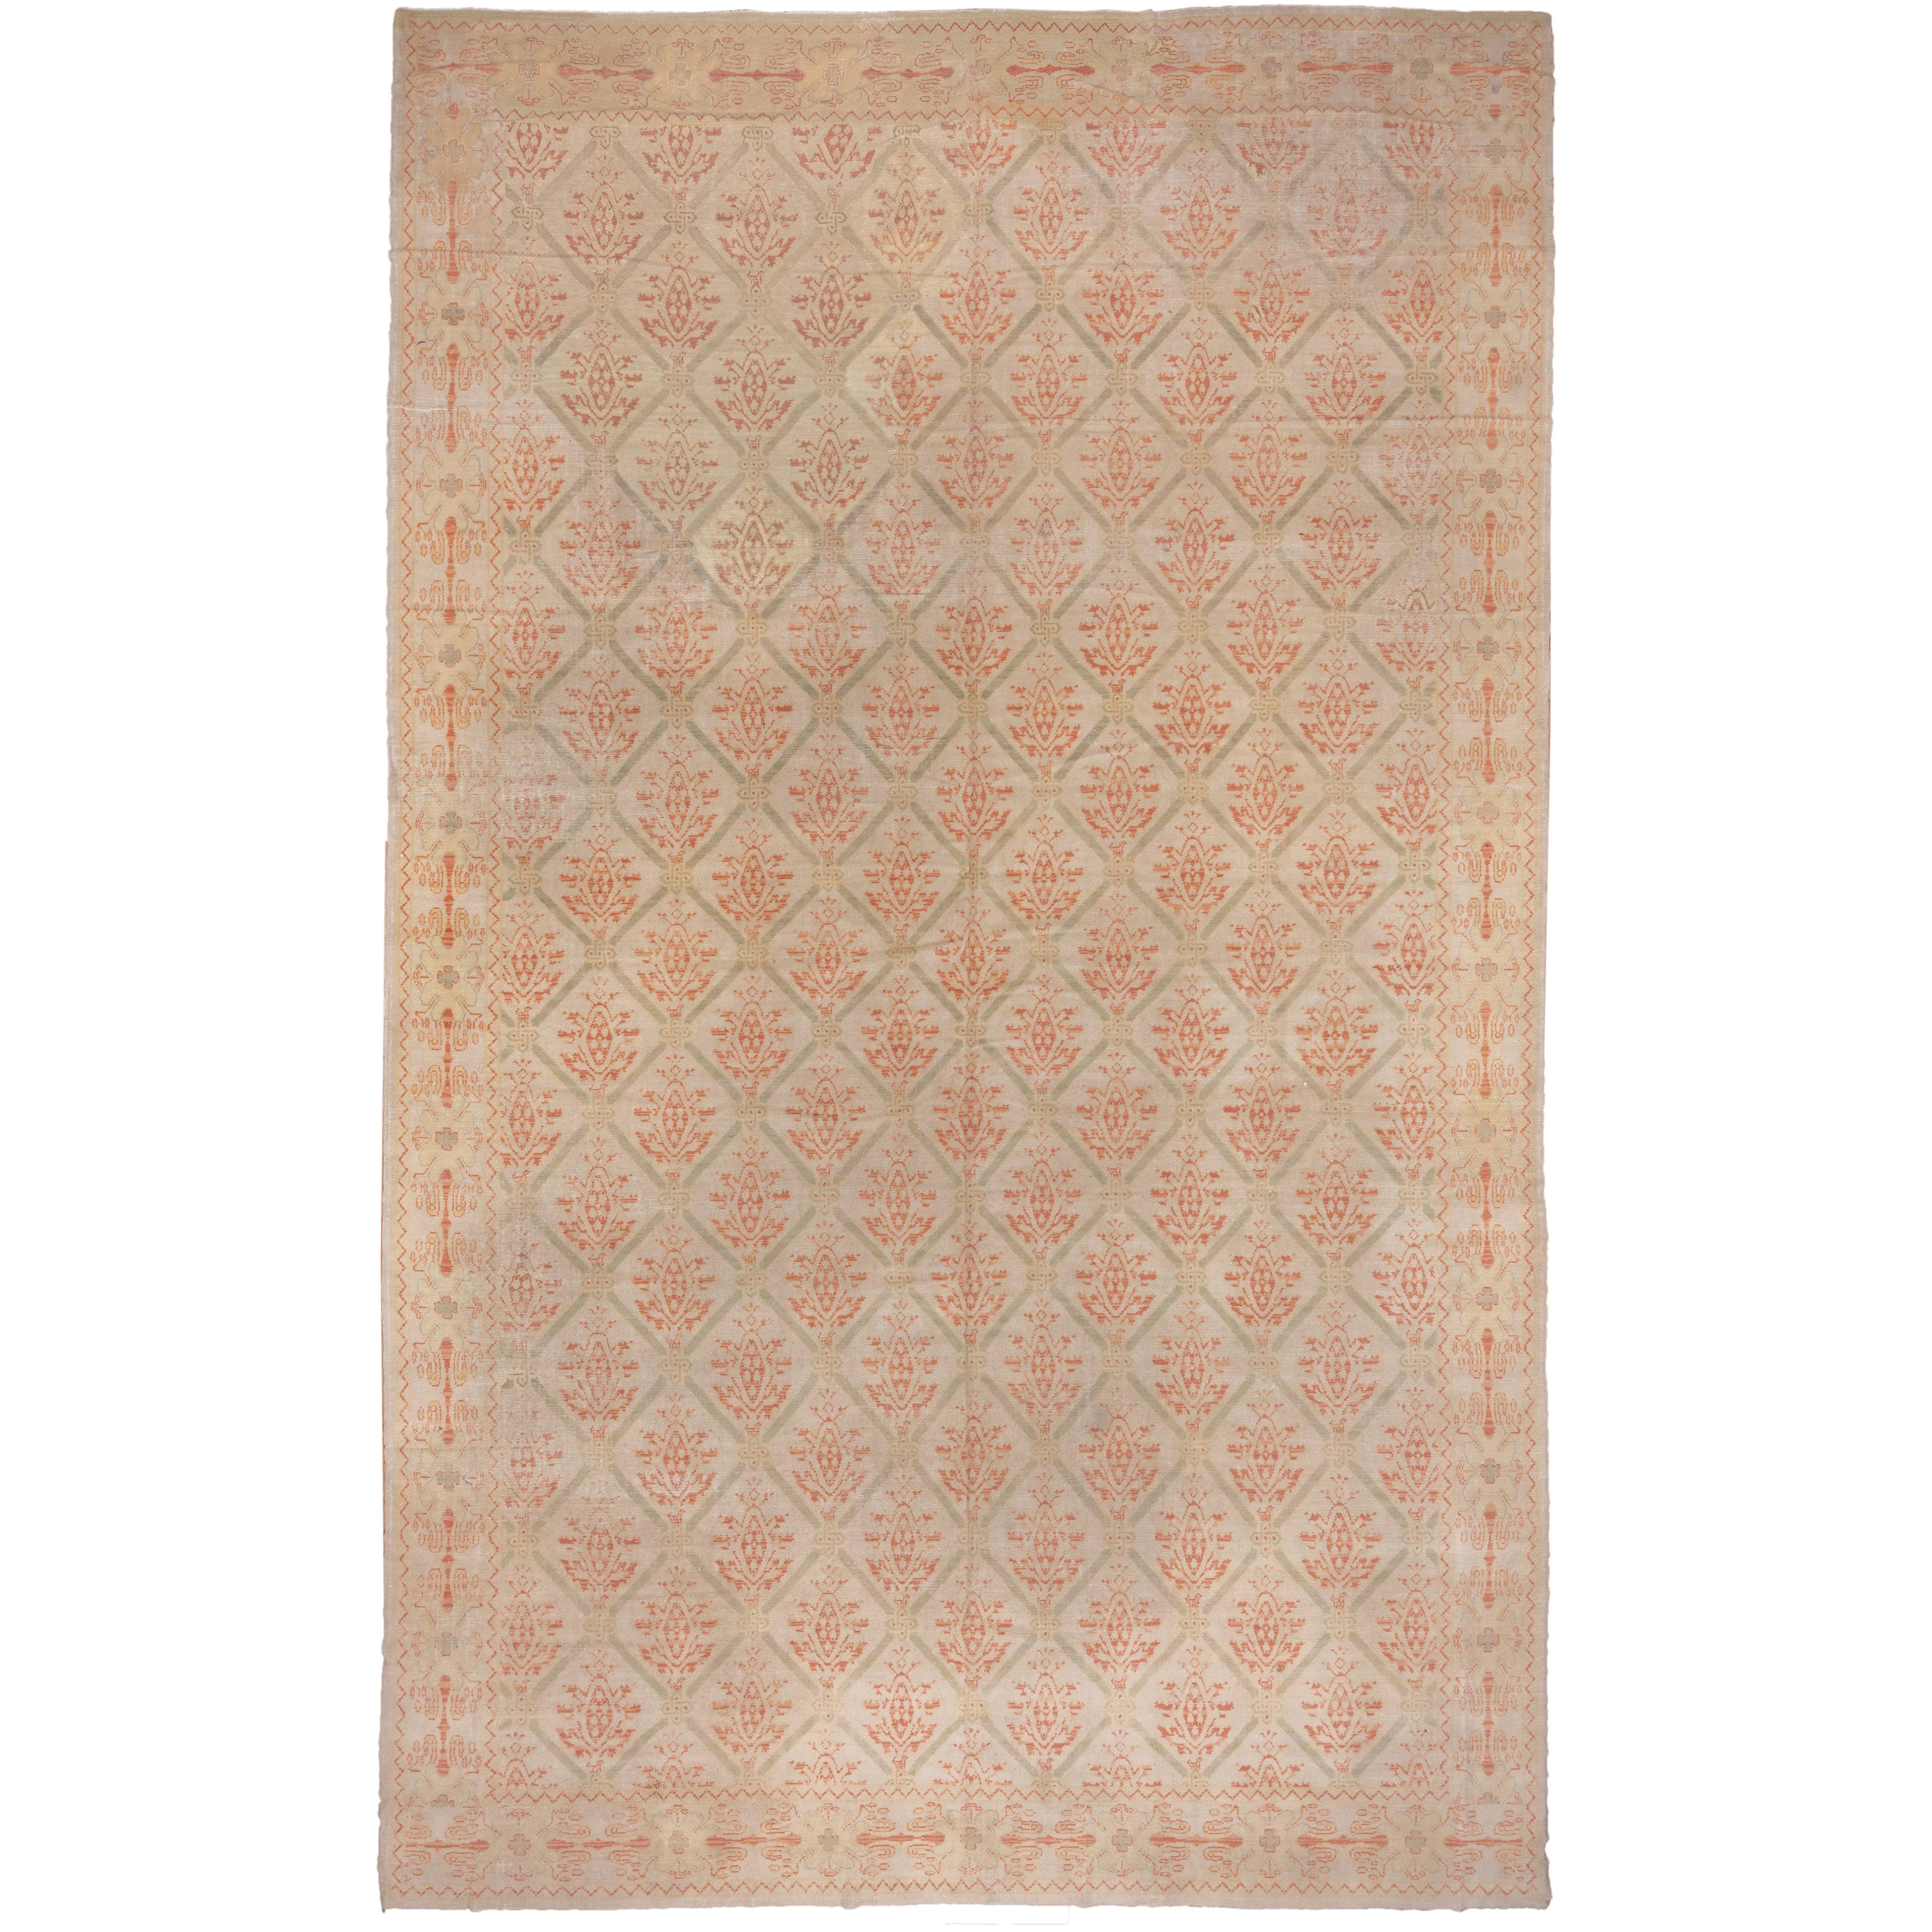 Antique Spanish Carpet, circa 1920s